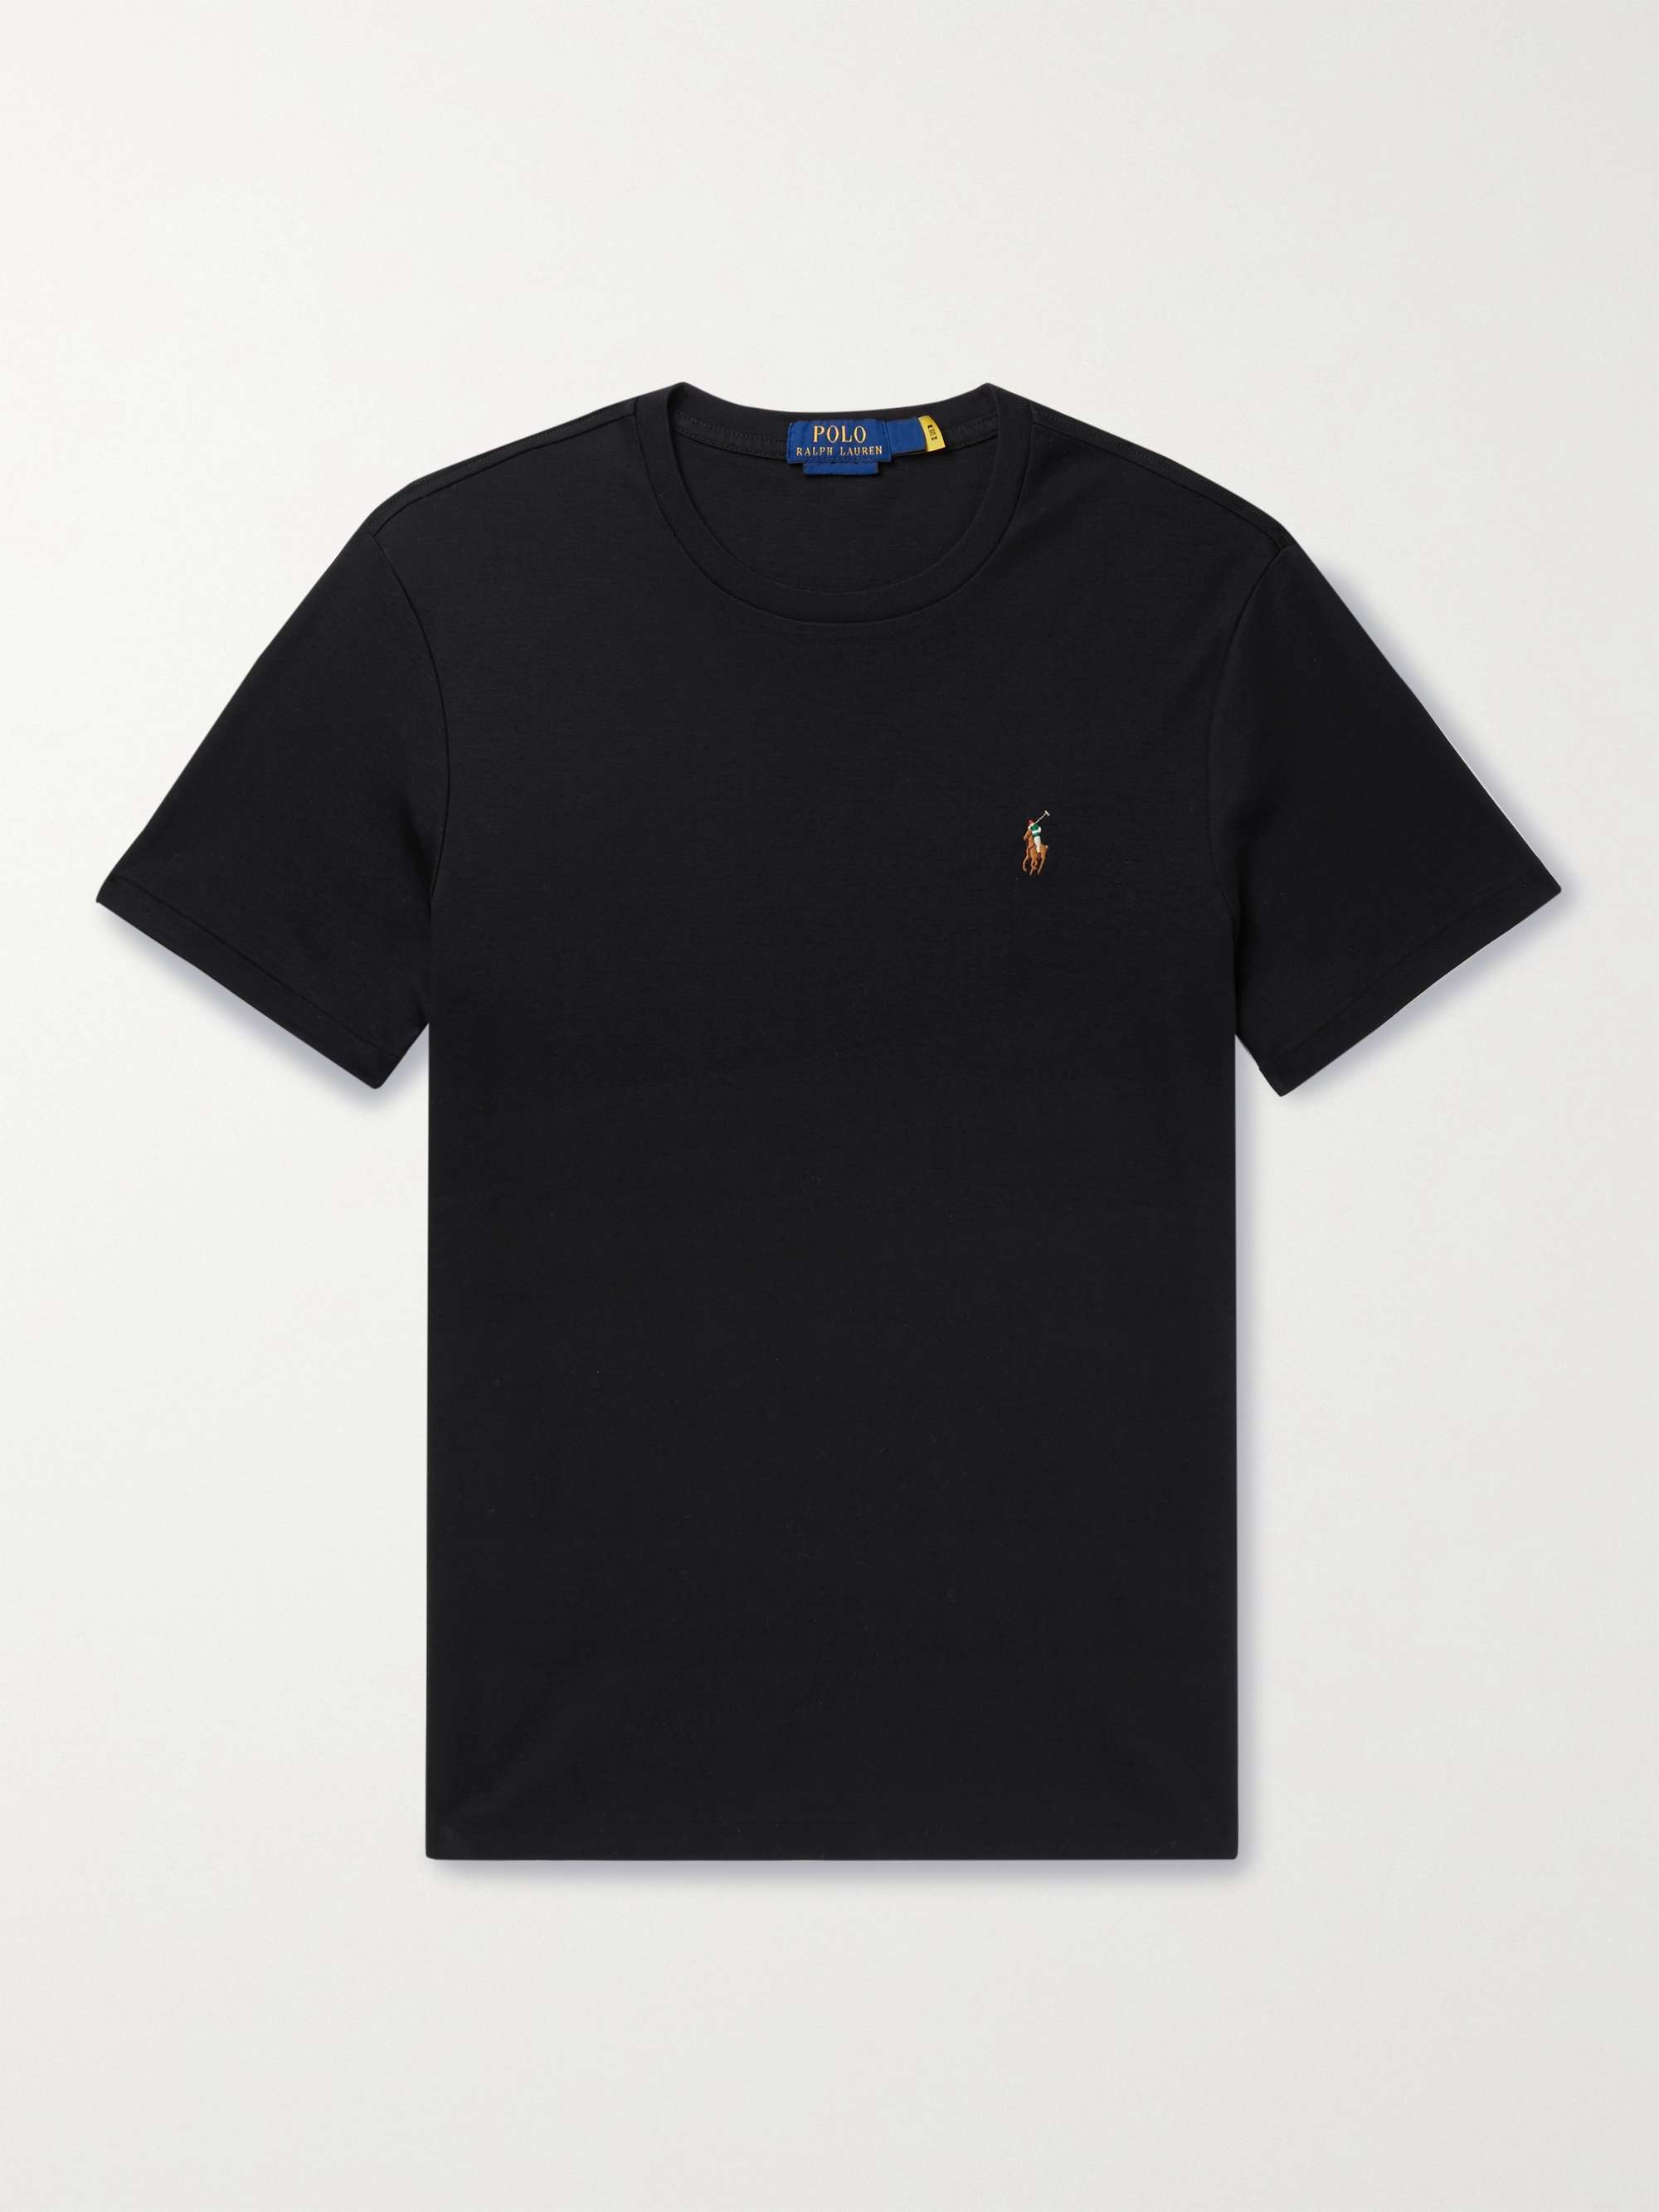 POLO RALPH LAUREN Cotton-Jersey T-Shirt | MR PORTER